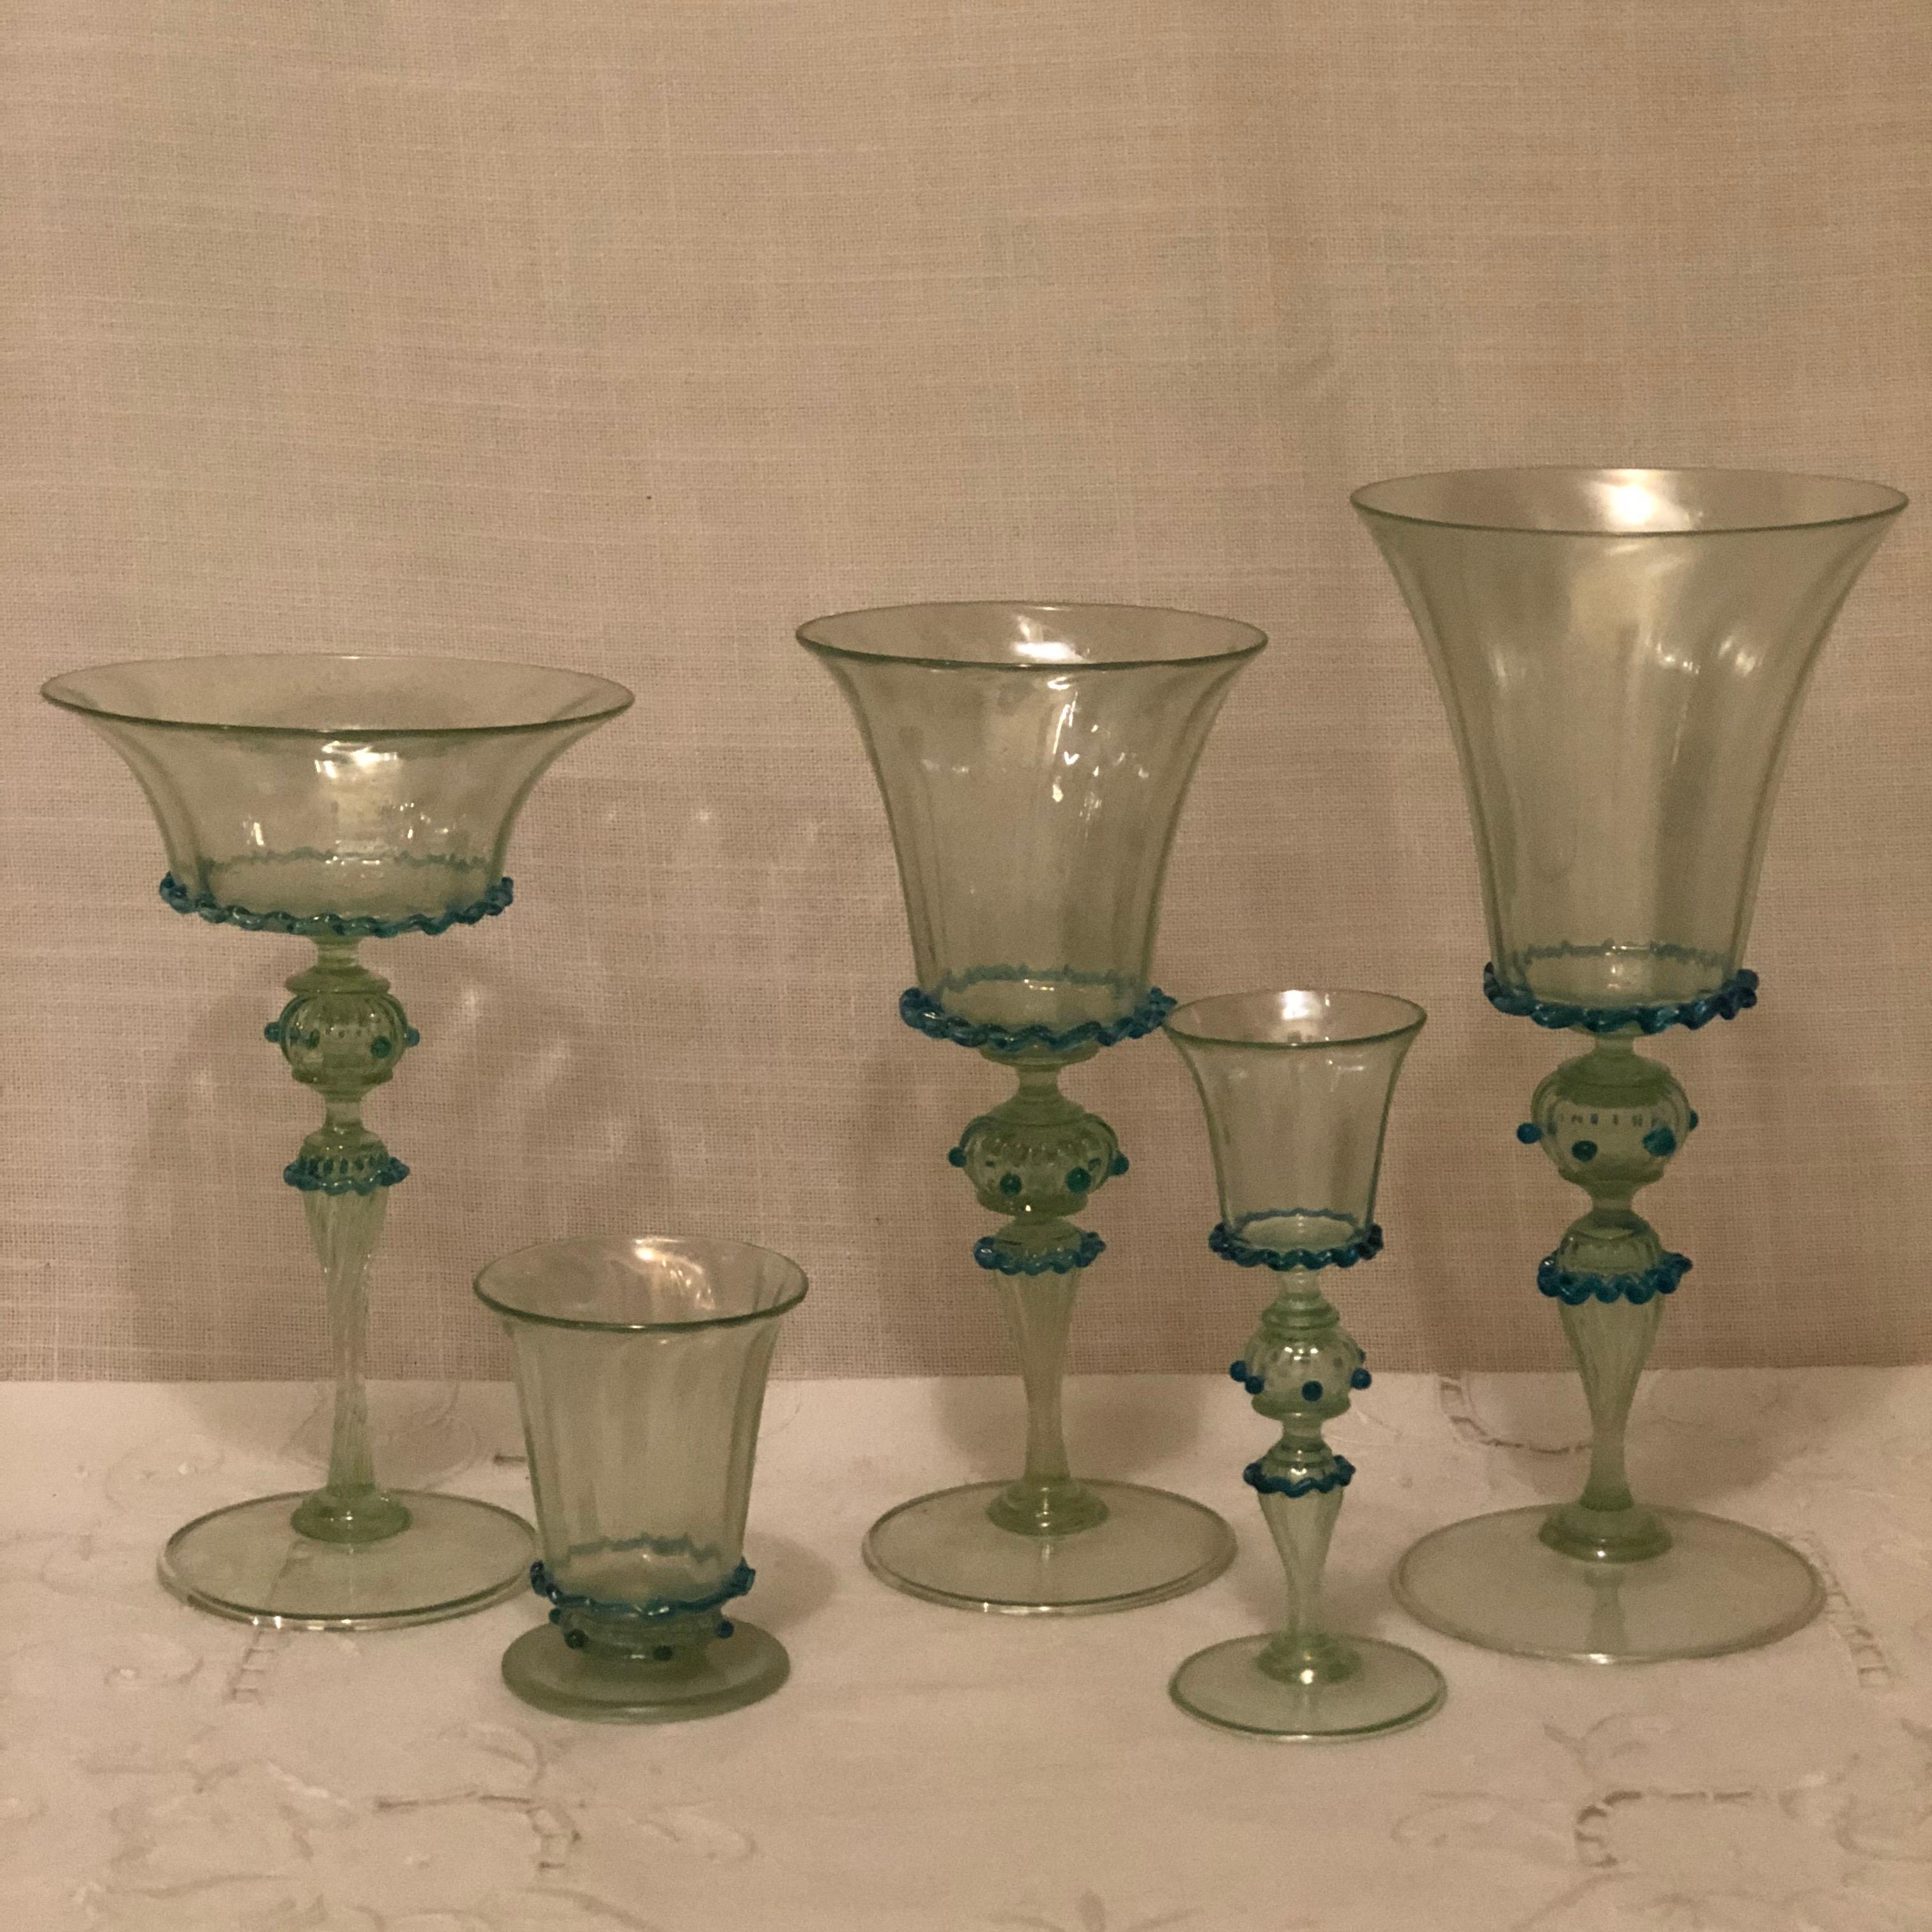 Ensemble de 58 pièces de verres à pied vénitiens opalescents de Salviati. Les verres à pied ont été soufflés à la main dans le but de leur faire prendre toutes les couleurs de l'arc-en-ciel, comme le ferait un joyau d'opale lorsque vous le placez